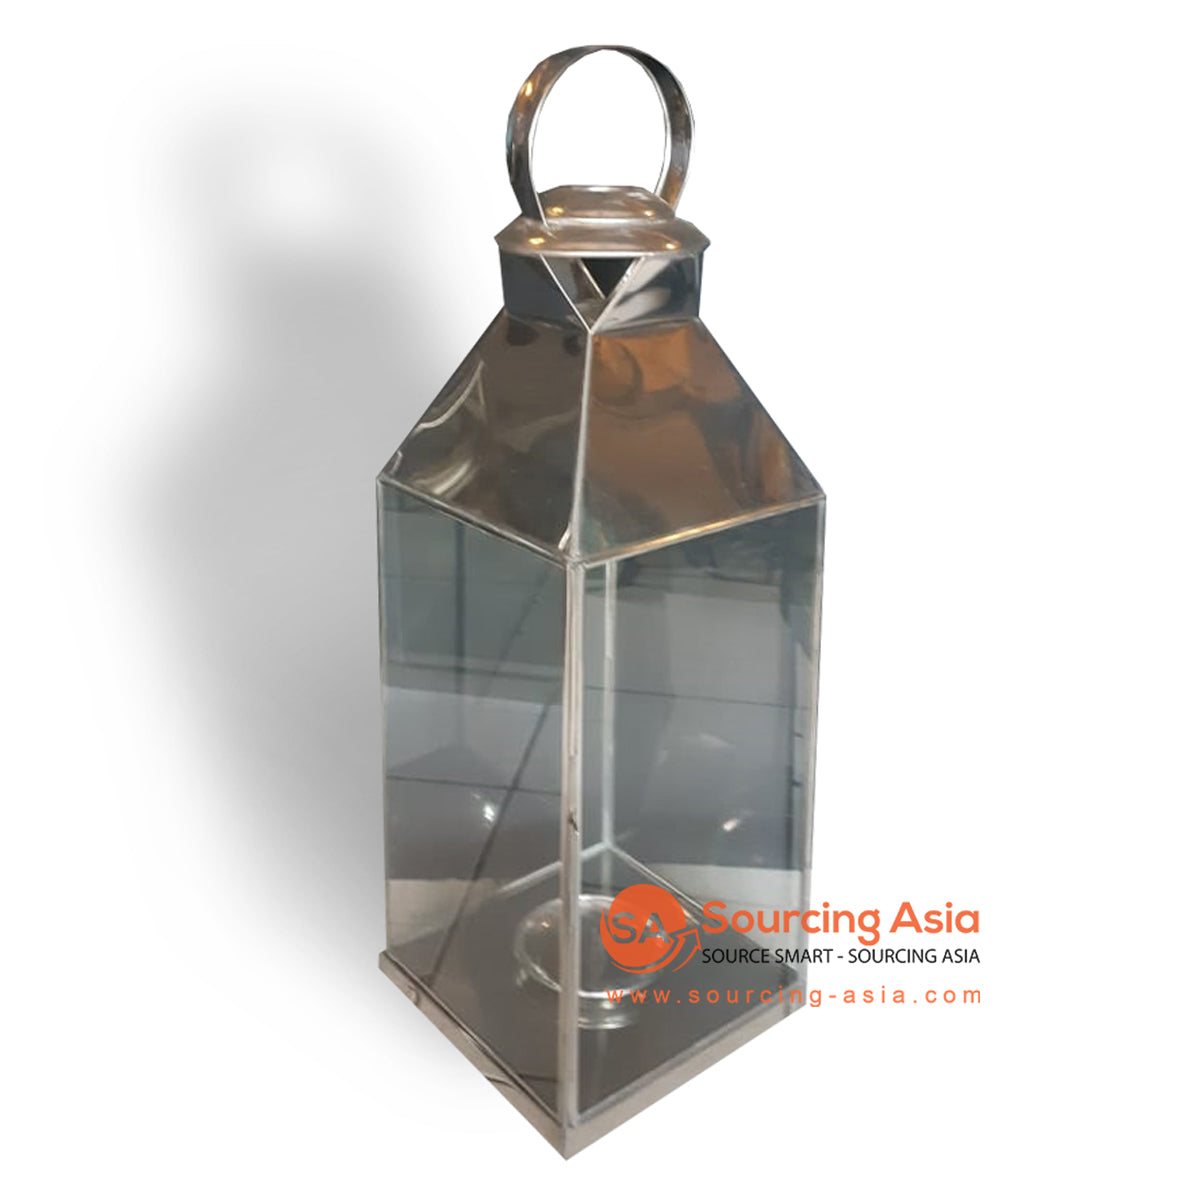 ODE036A-1 BLACK COPPER CLASSIC LANTERN LAMP HOLDER